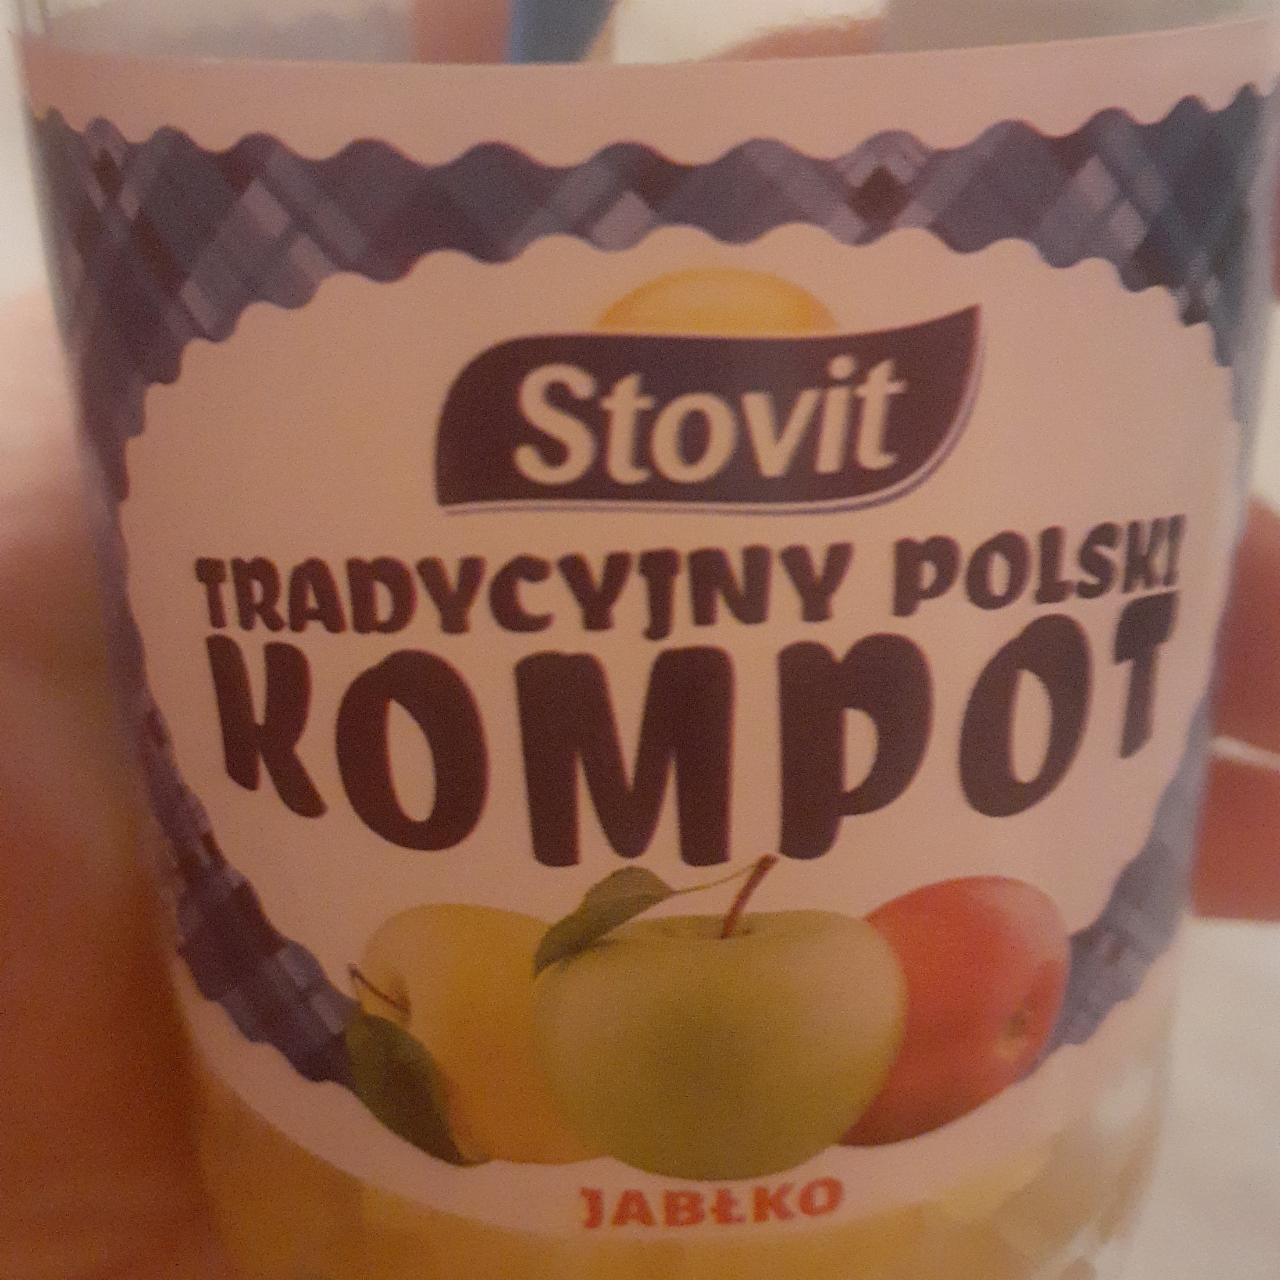 Zdjęcia - Tradycyjny polski kompot jabłko Stovit